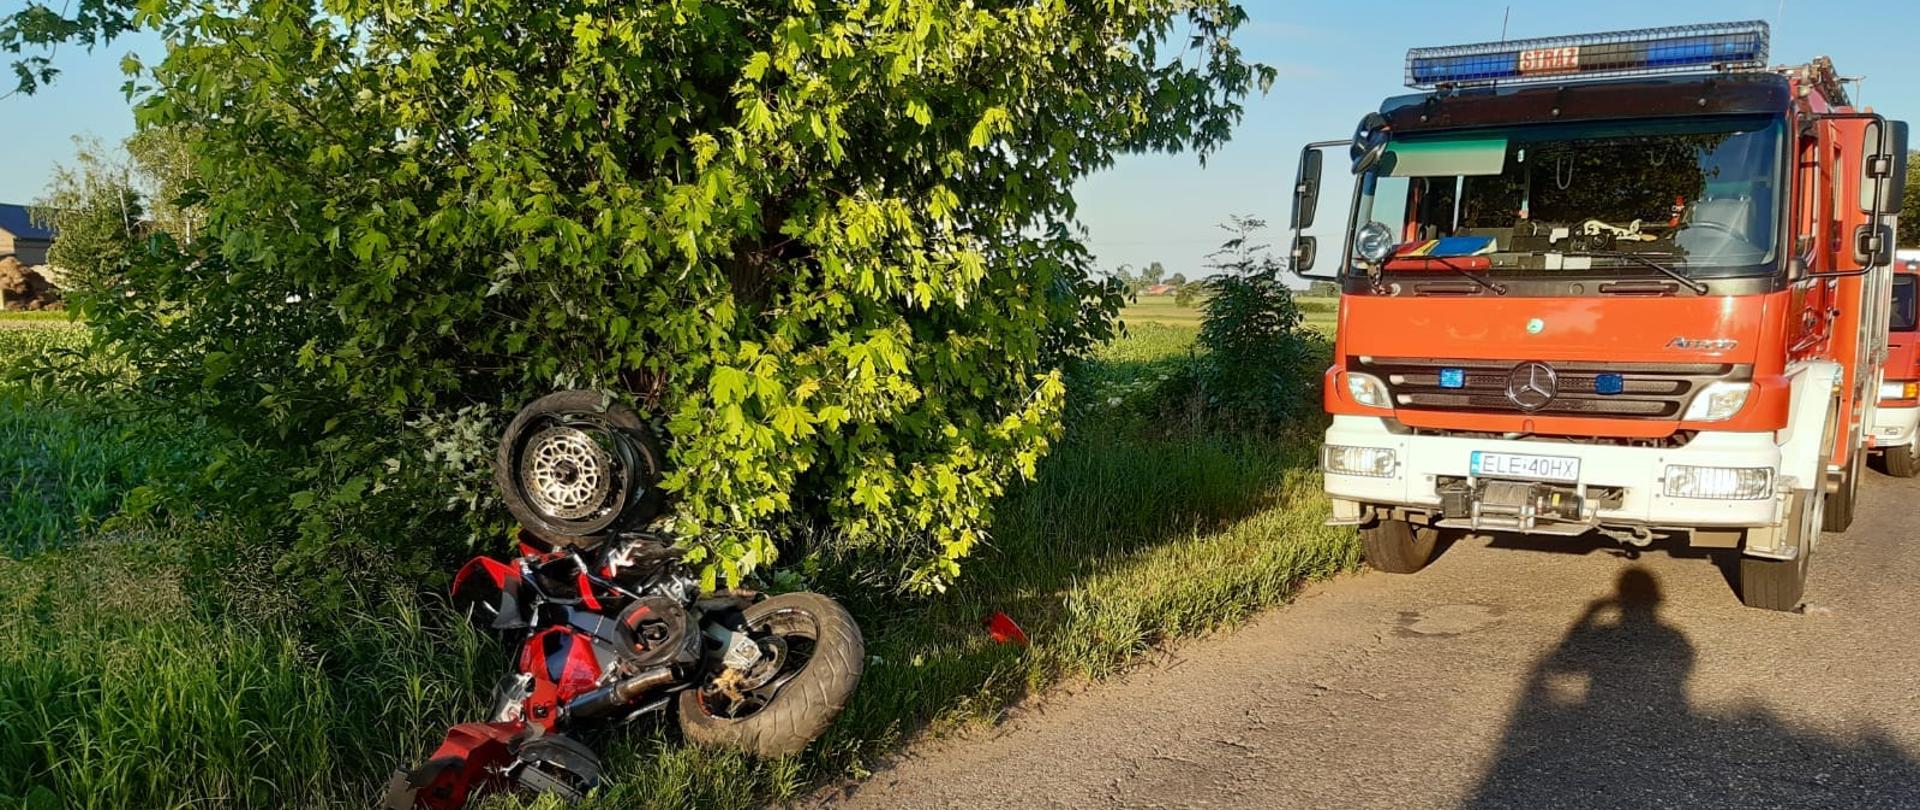 Na zdjęciu widać przewrócony motocykl, który jest w rowie obok drzewa. Na asfaltowej drodze stoi czerwony samochód strażacki ustawiony przodem do motocykla. Za nim widać częściowo drugi samochód strażacki. Jest widno.